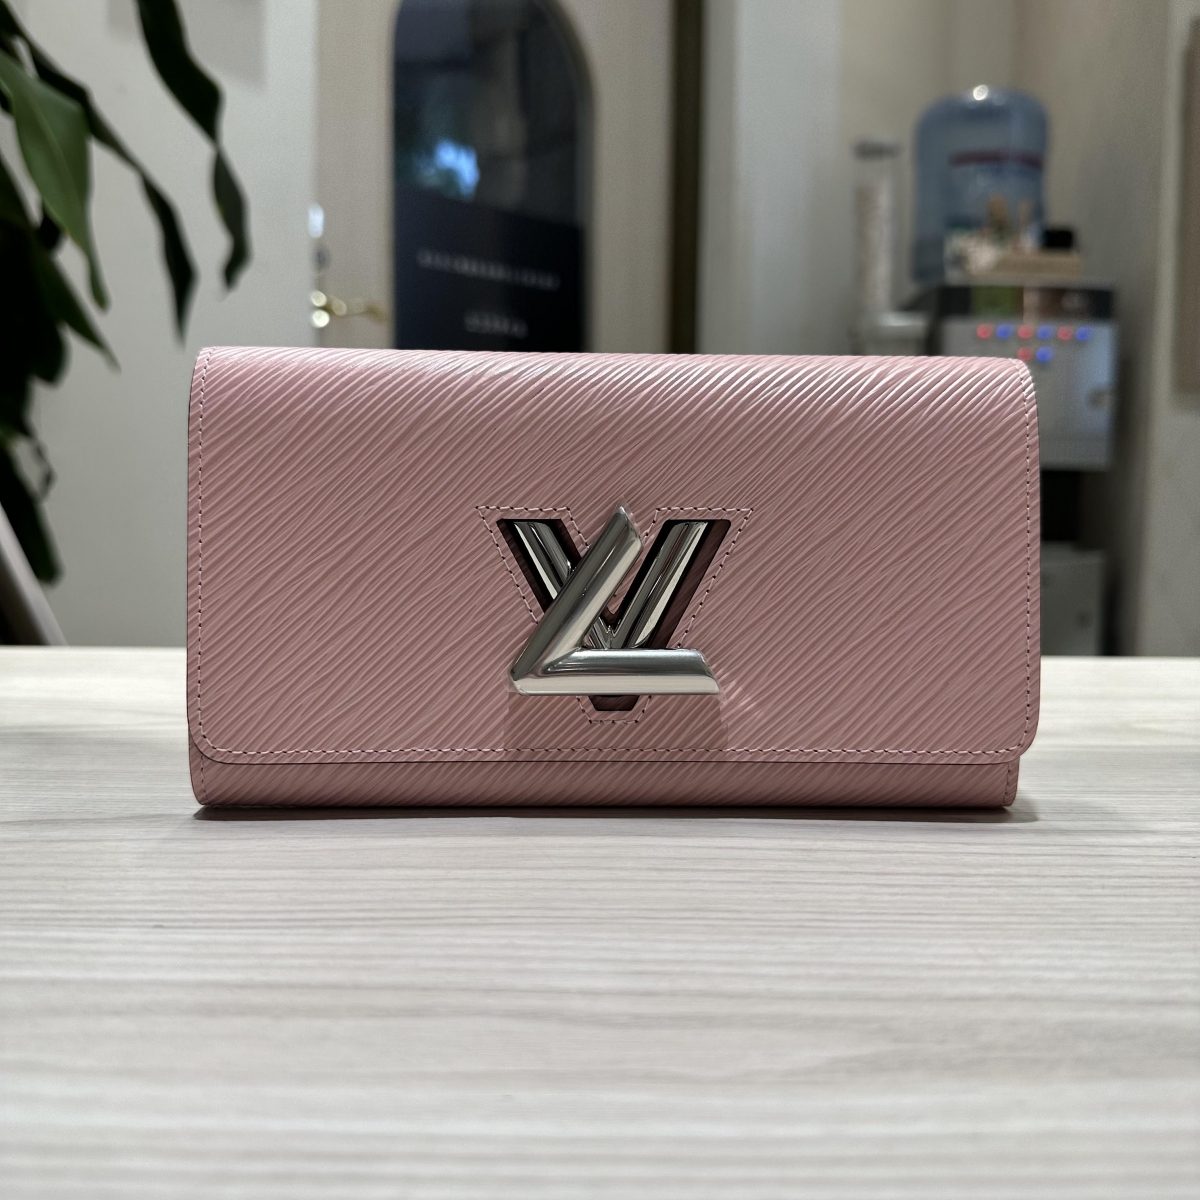 ルイヴィトンのローズバレリーヌ エピ M61178 2018年製 ポルトフォイユツイスト 長財布の買取実績です。